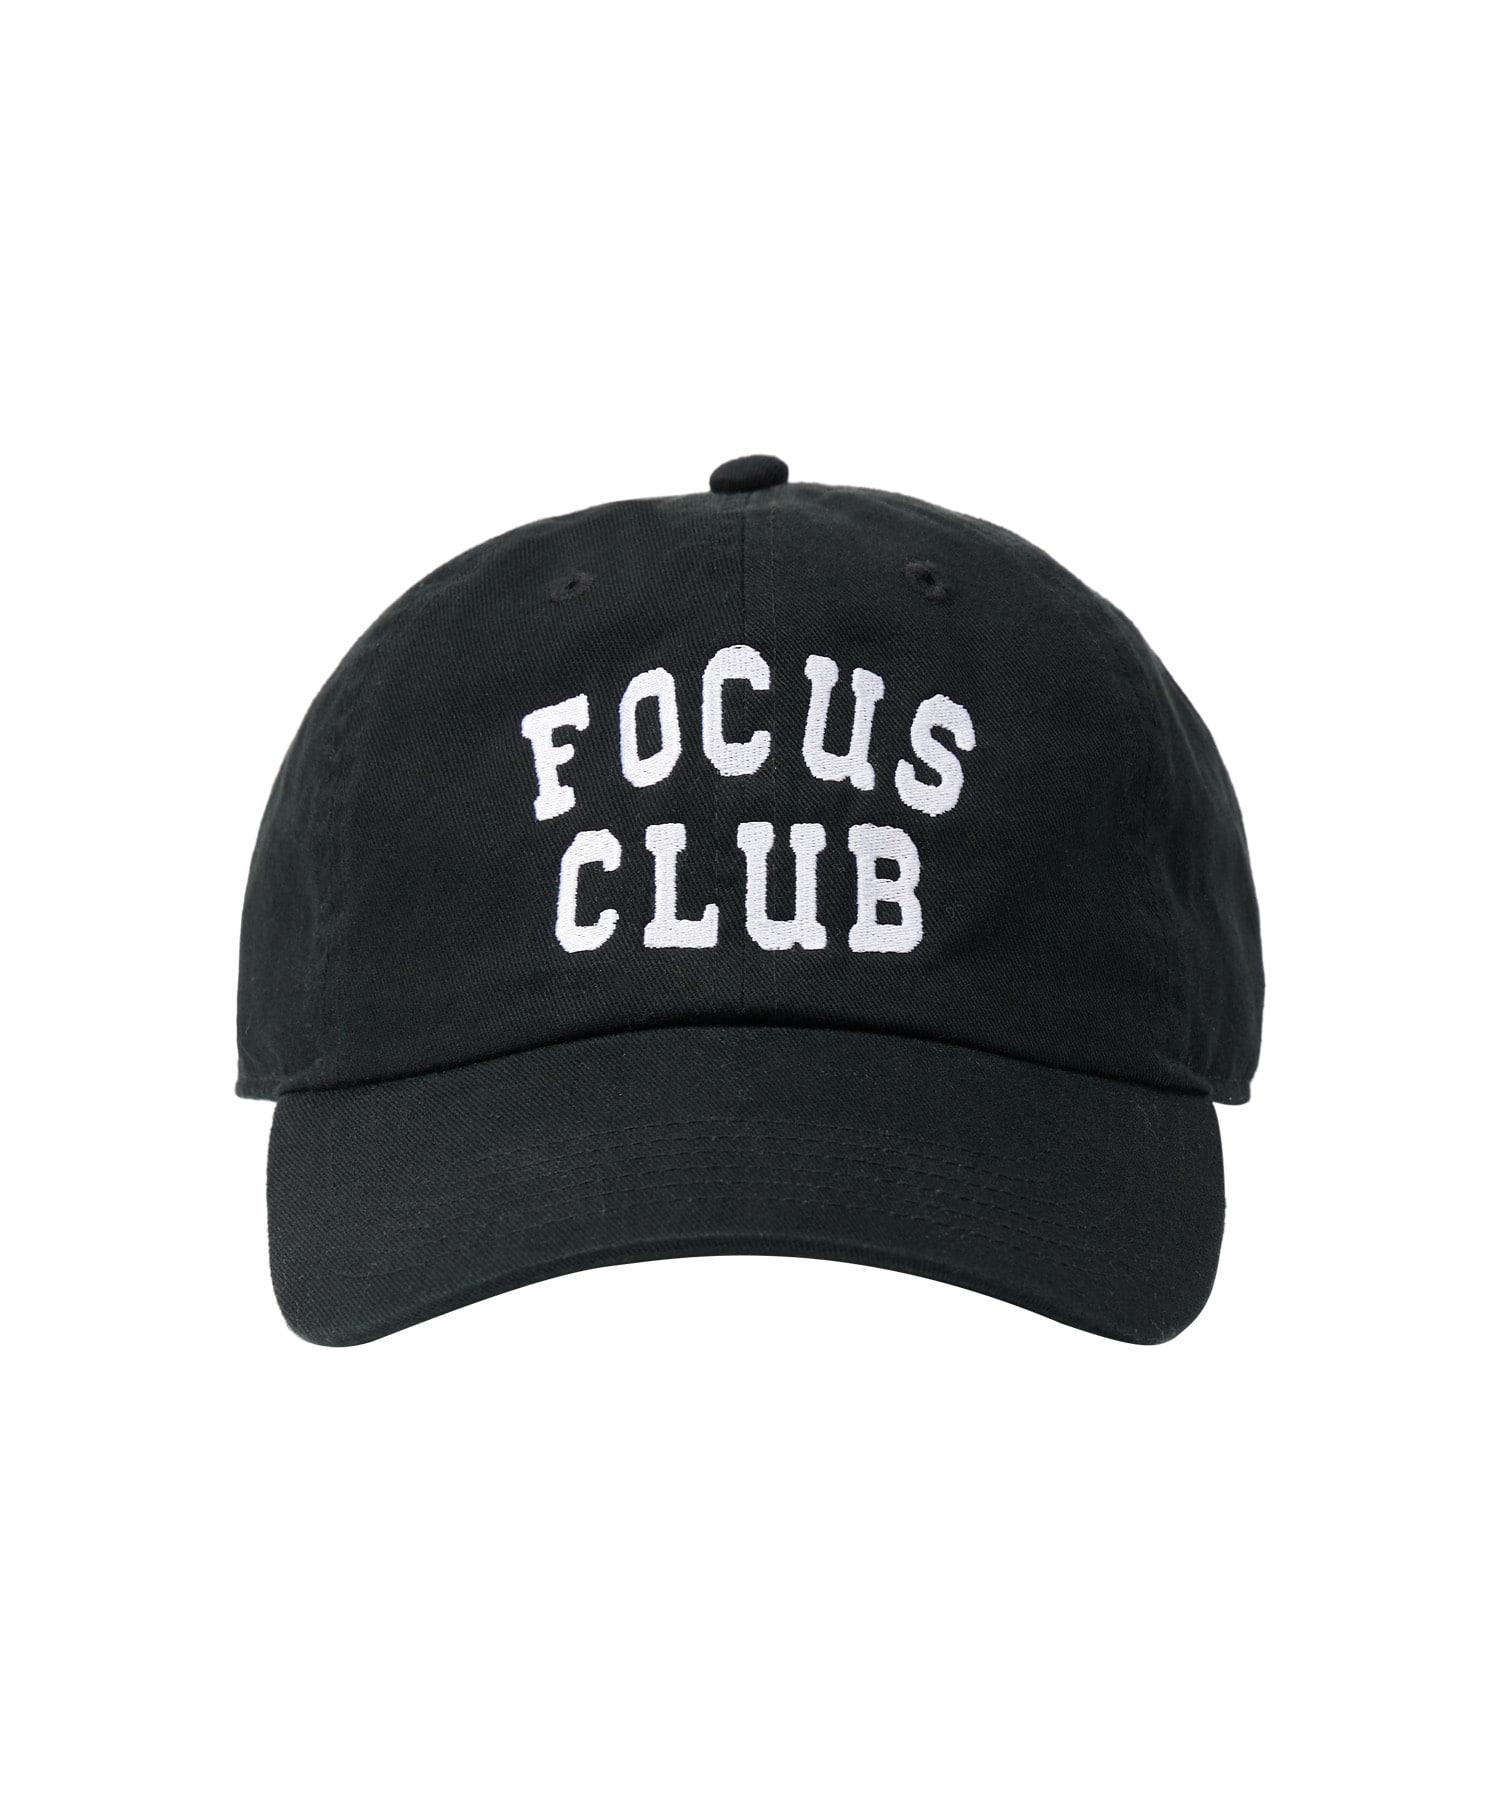 라이프 아카이브 FOCUS CLUB BALL CAP_BLACK 라이프,LIFE, LIFE ARCHIVE,볼캡,라이프볼캡,ballcap